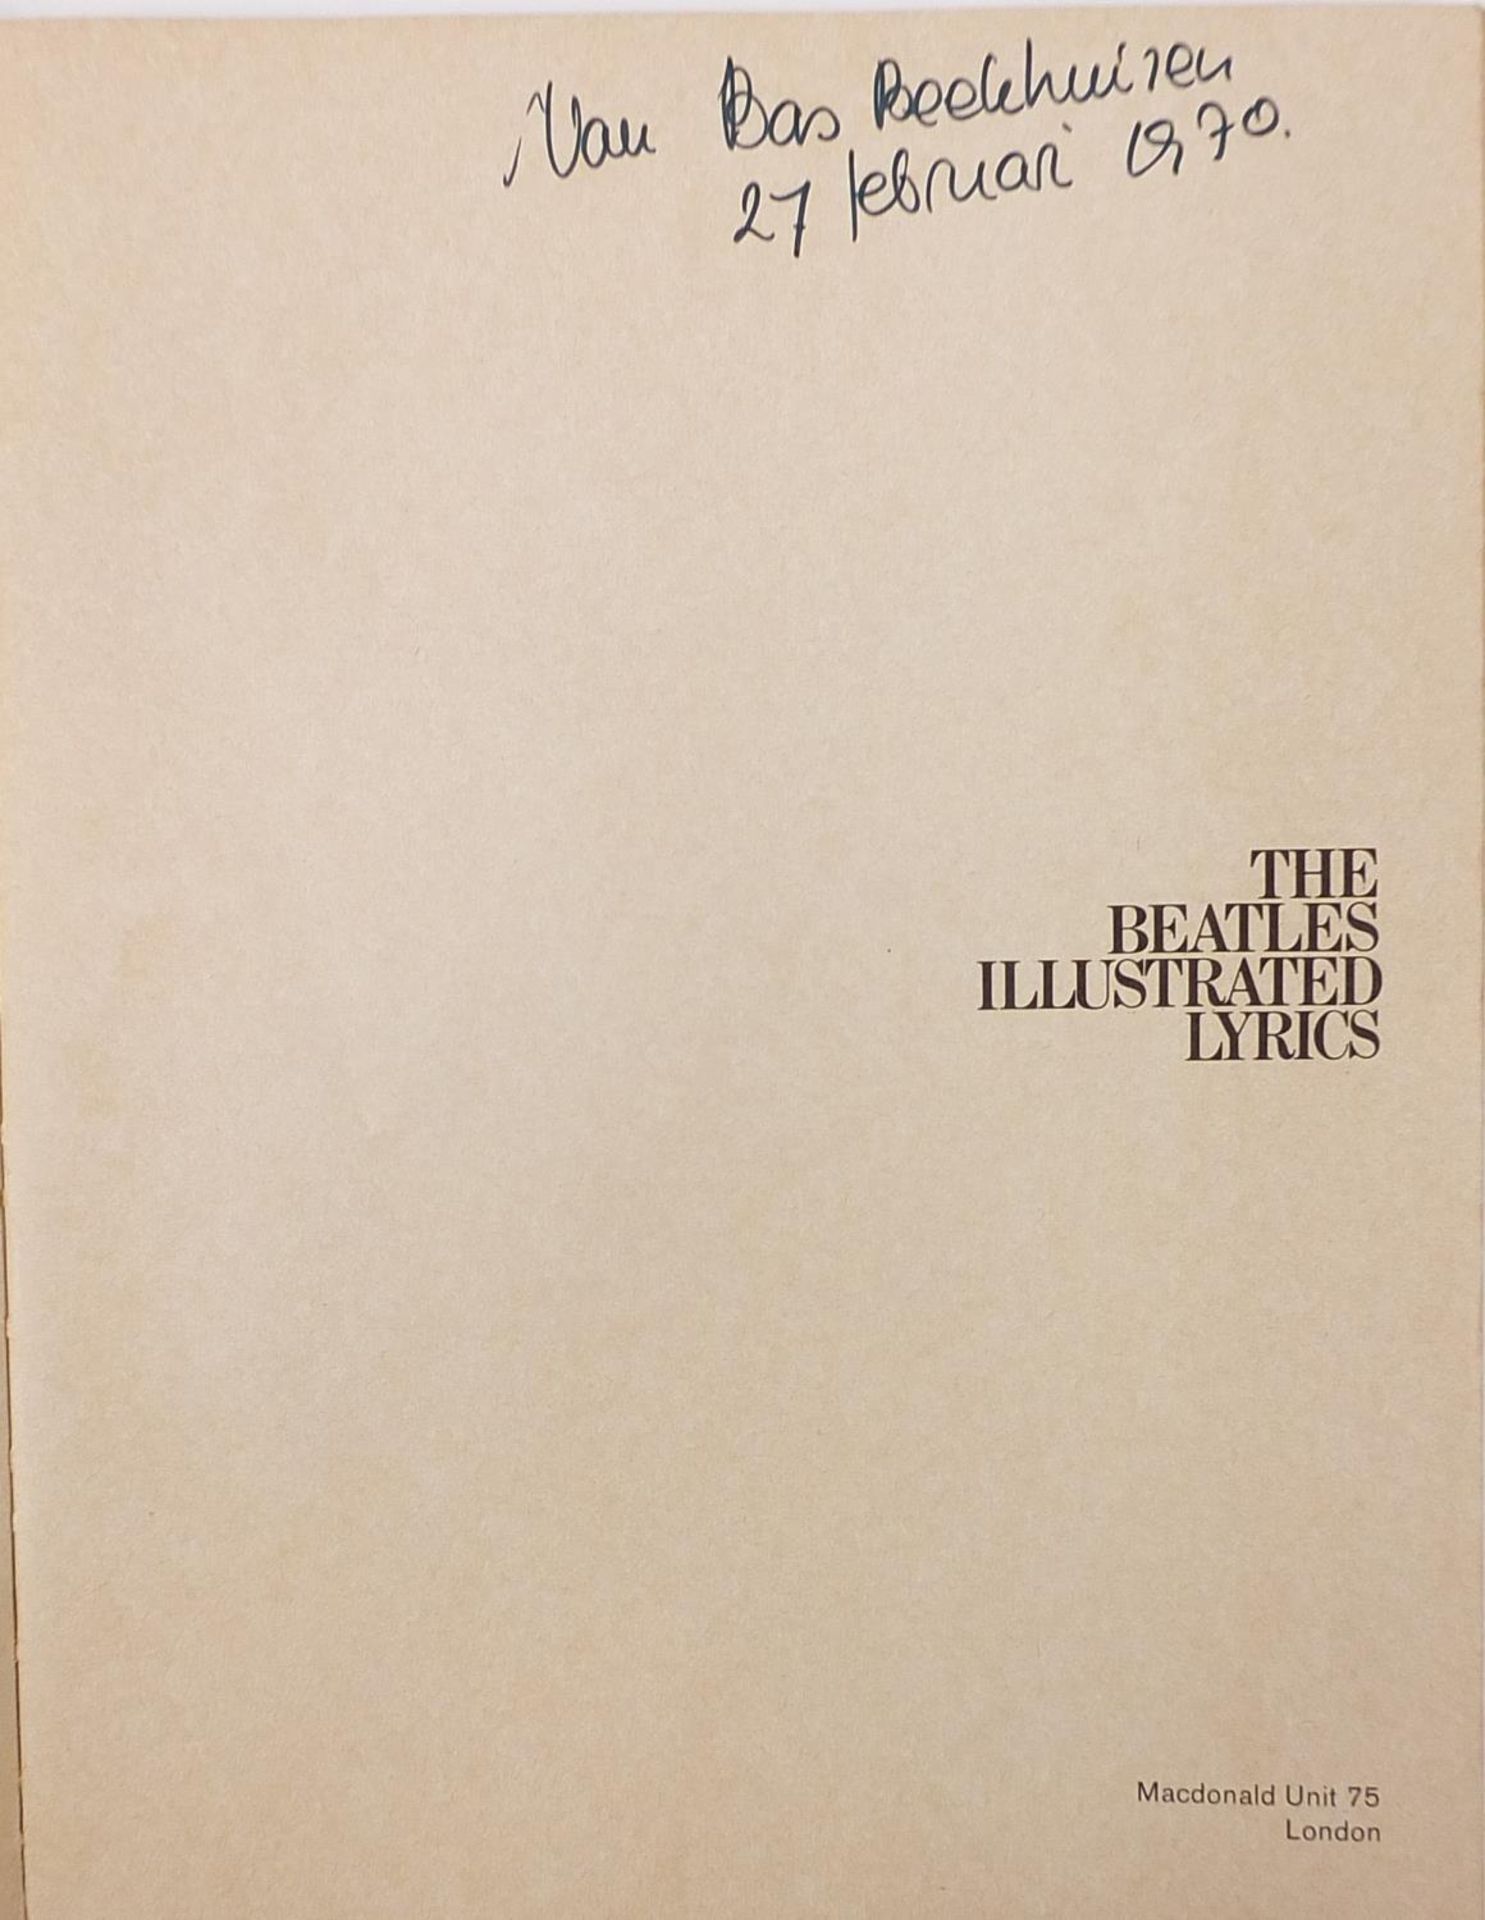 Vintage Beatles illustrated lyrics booklet edited by Alan Aldridge - Image 2 of 7